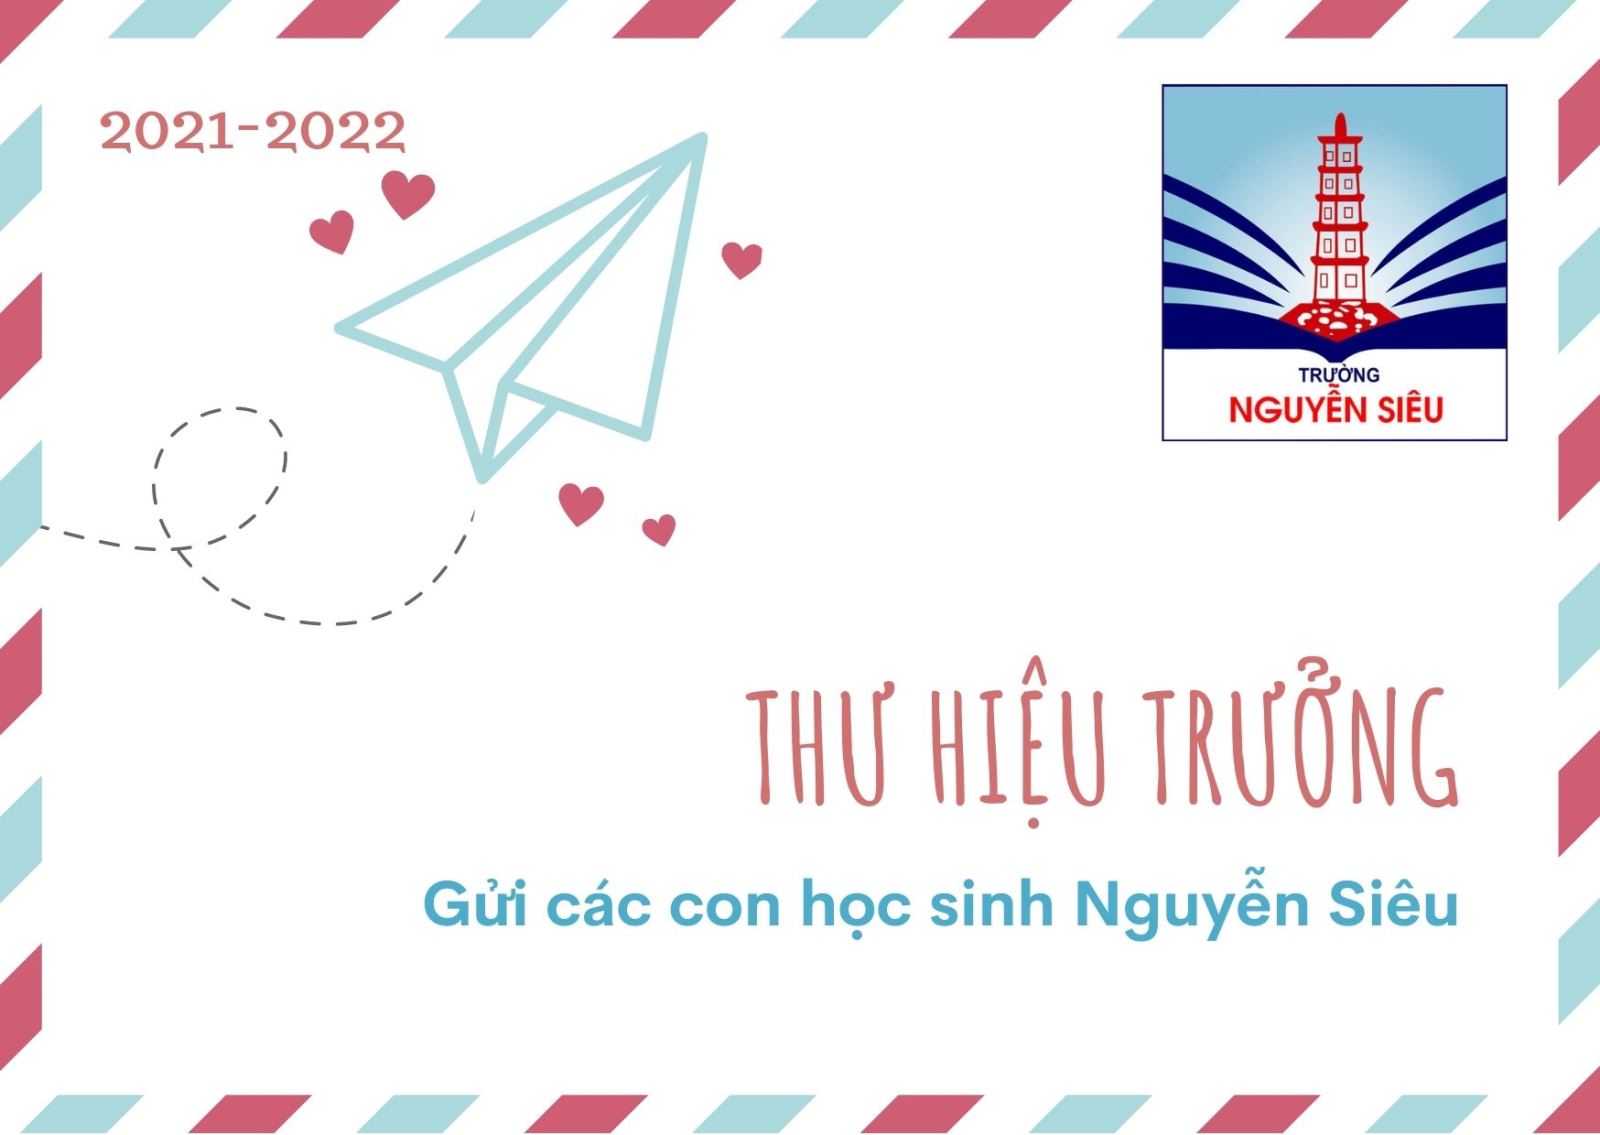 Gửi các con học sinh Nguyễn Siêu yêu quý!